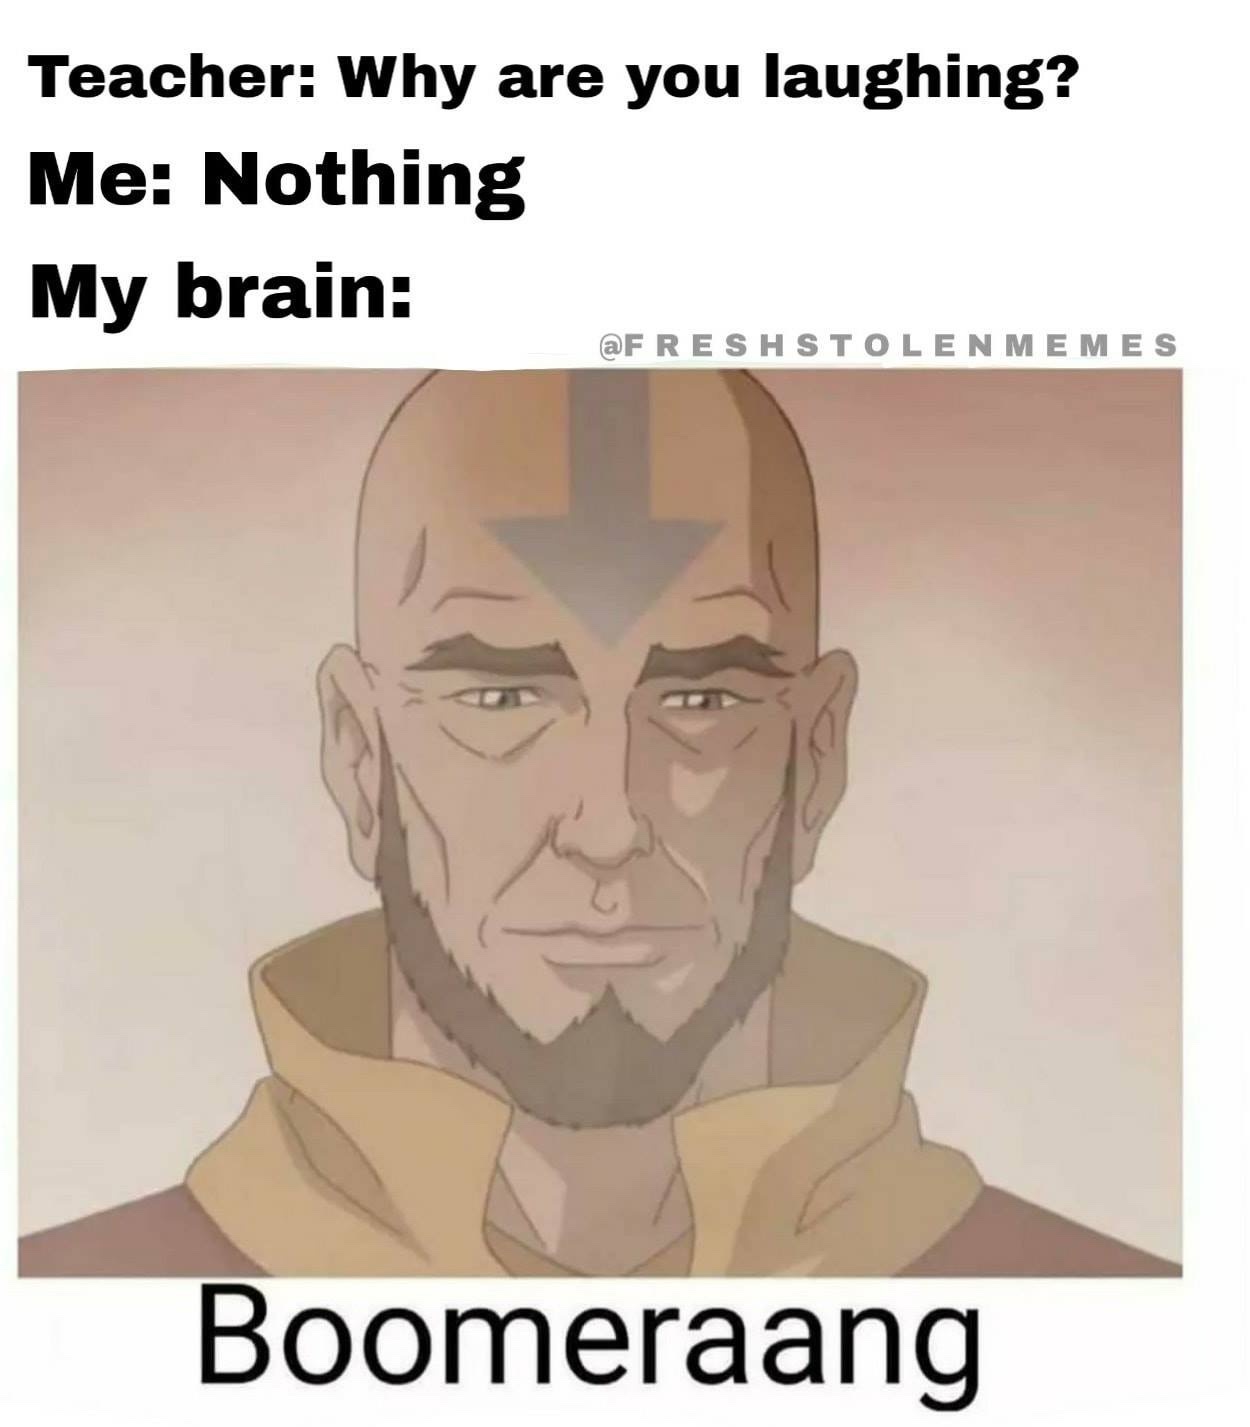 boomeraang - meme